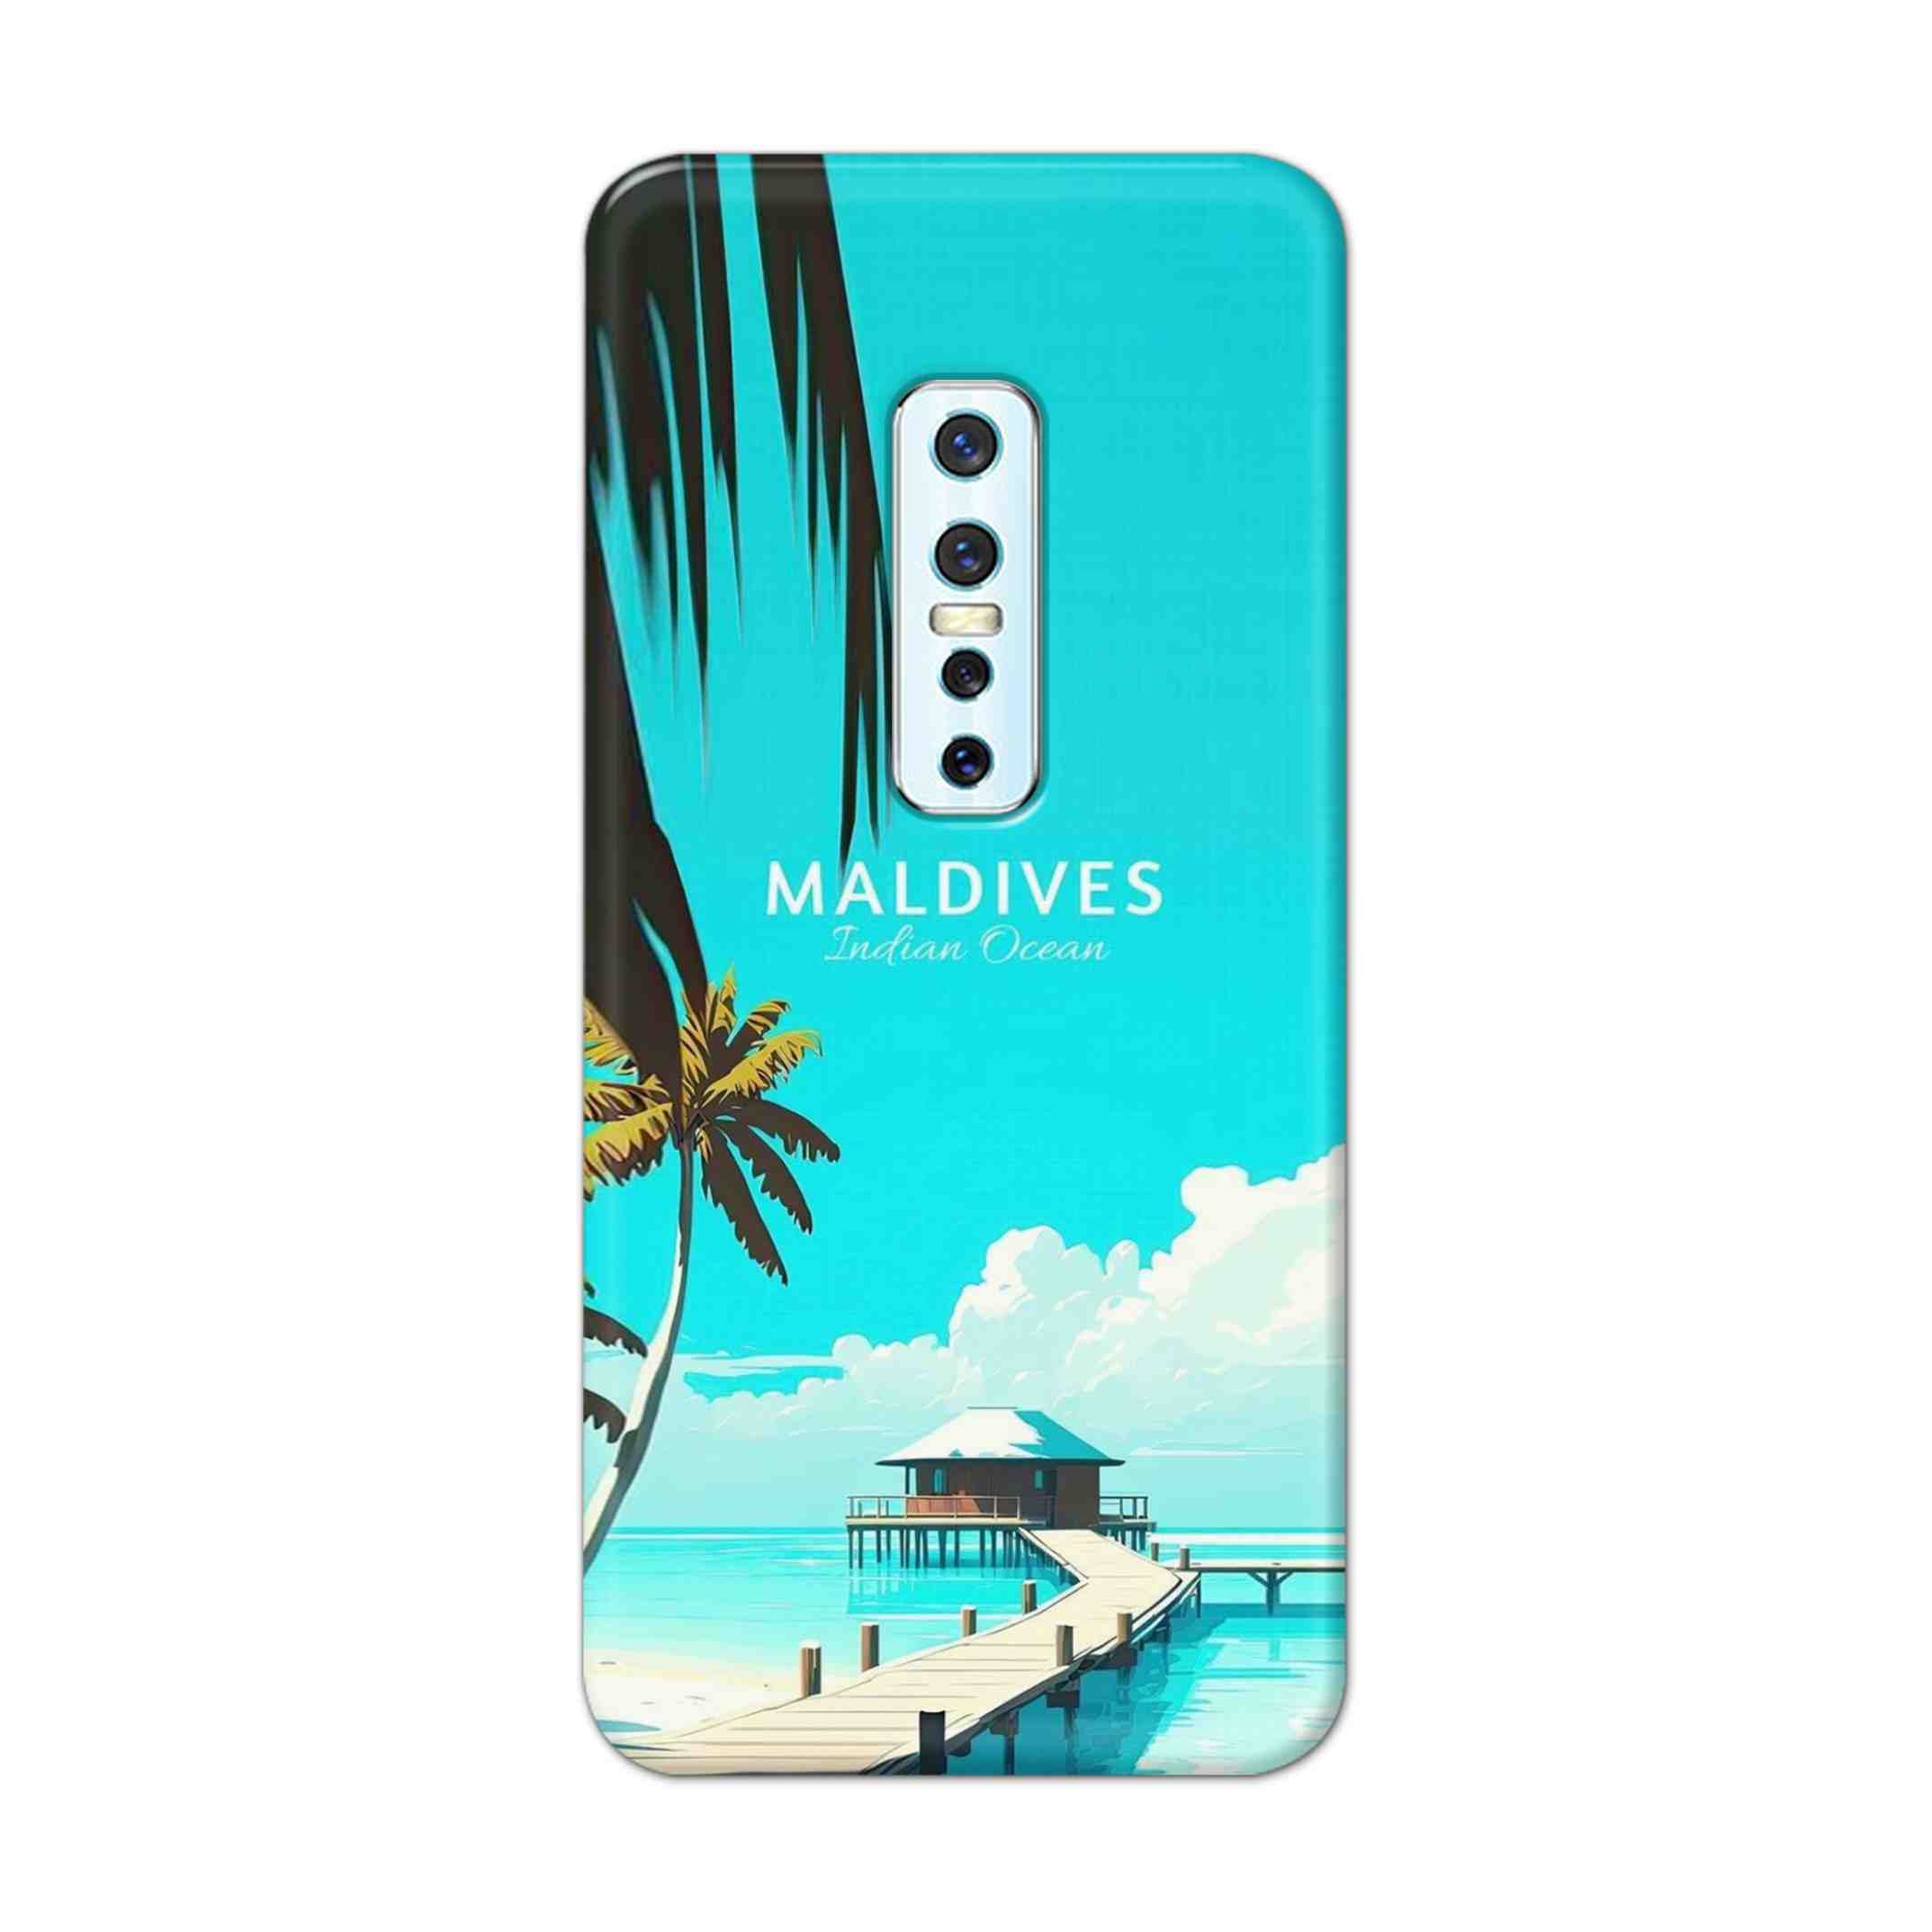 Buy Maldives Hard Back Mobile Phone Case Cover For Vivo V17 Pro Online